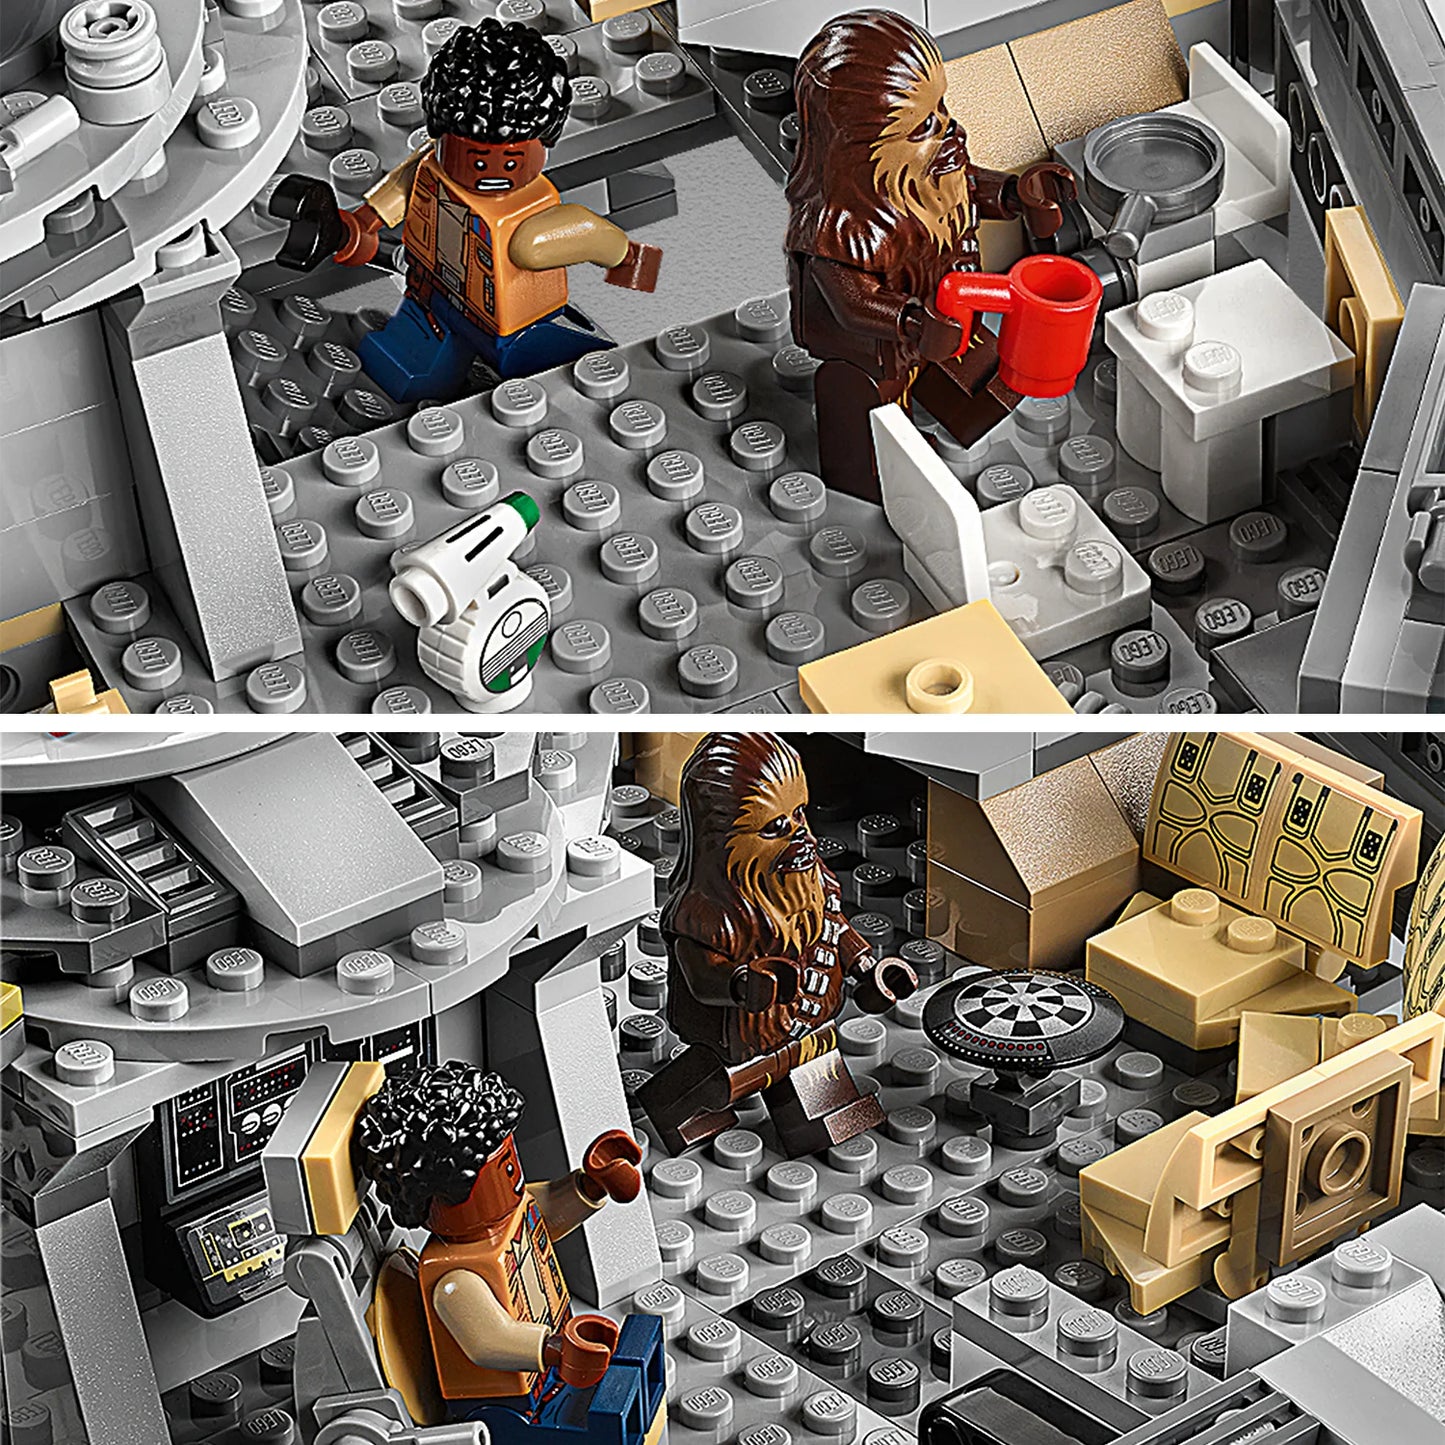 Millennium Falcon-LEGO Star Wars